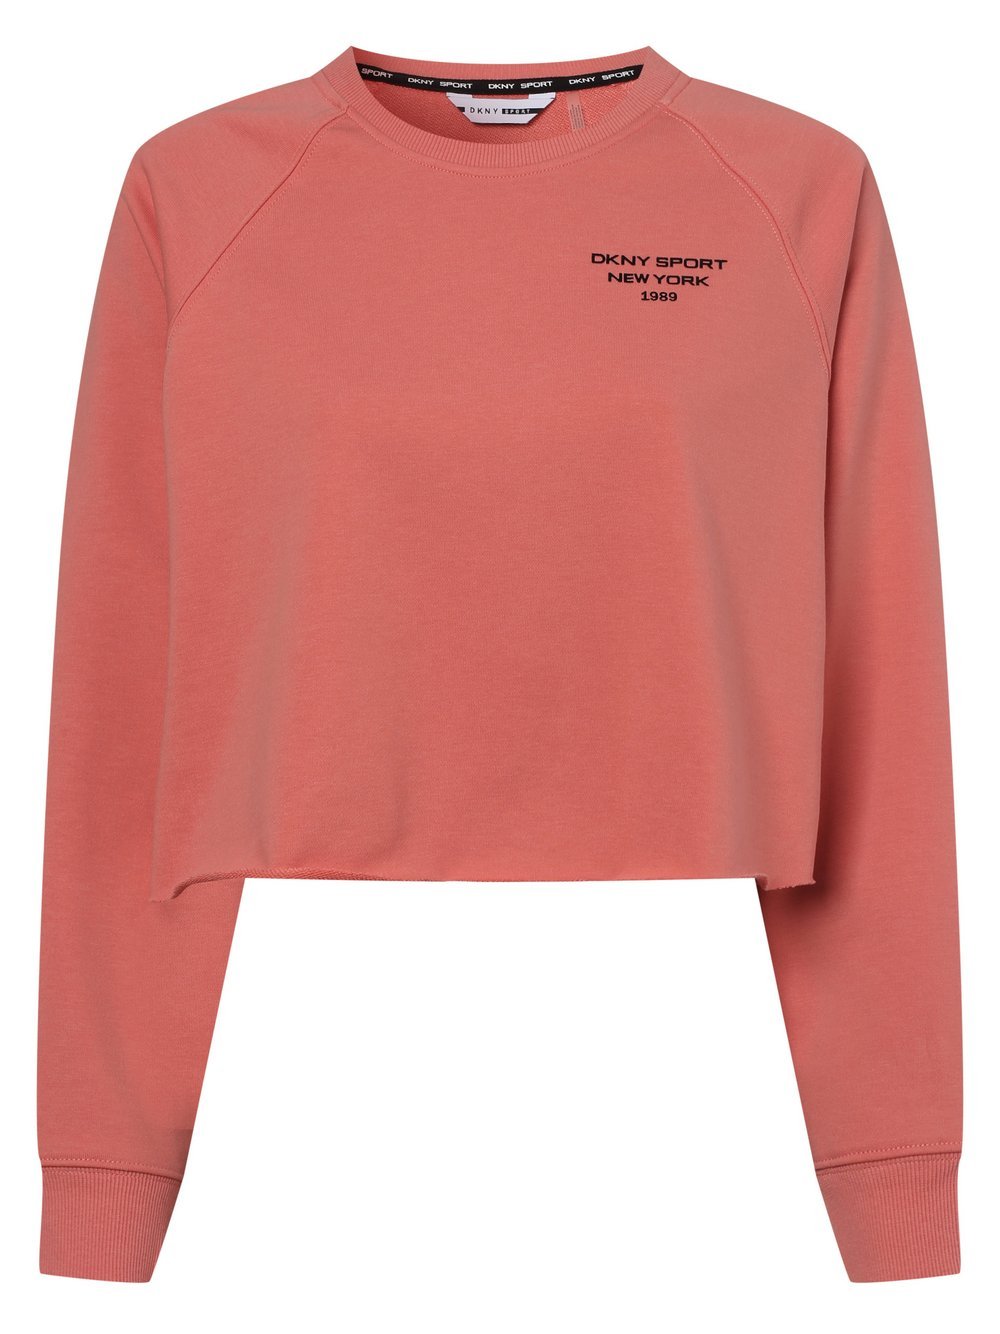 DKNY - Damska bluza nierozpinana, pomarańczowy|różowy|czerwony